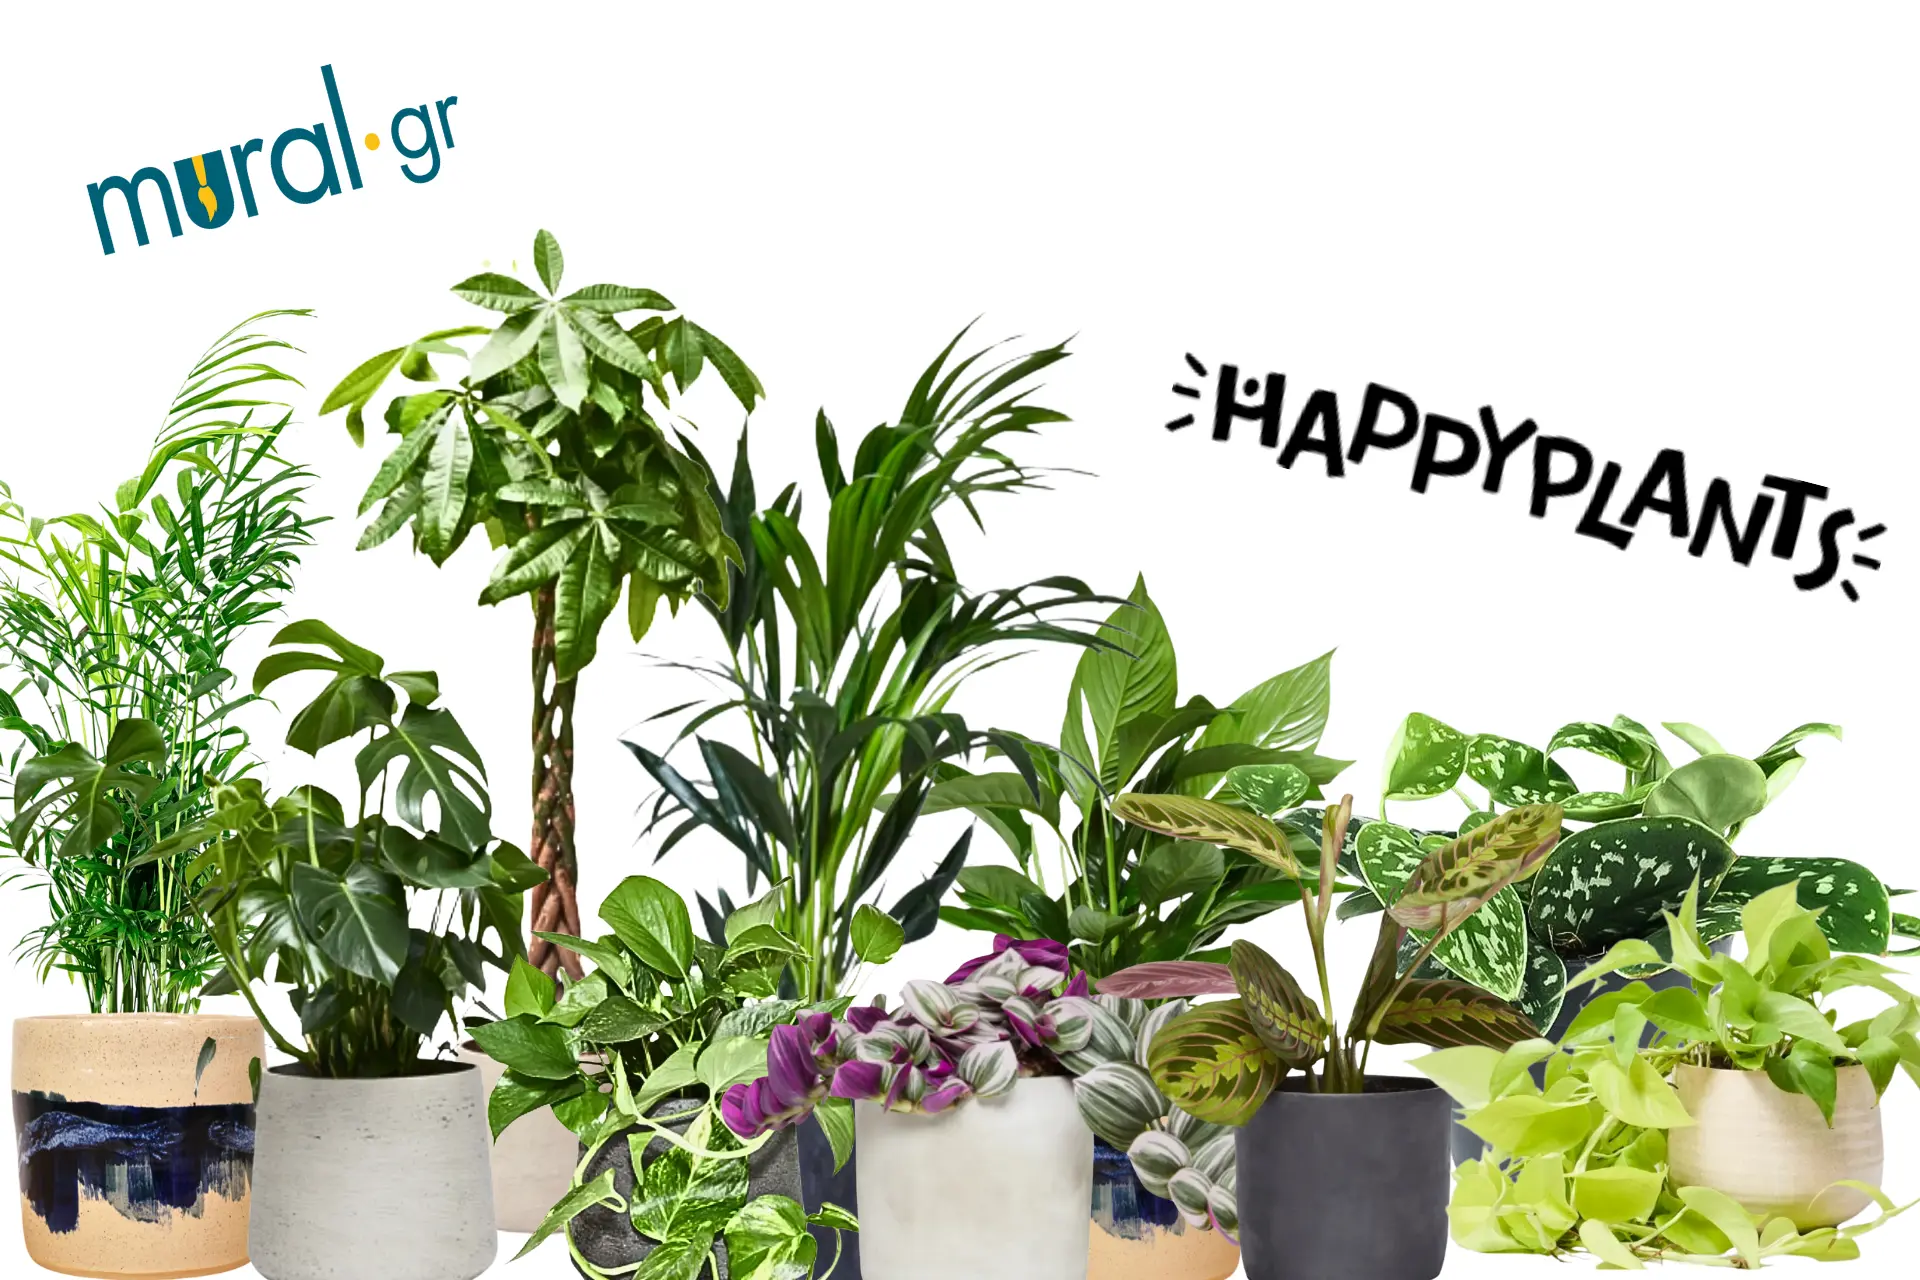 Τα 10 πιο εύκολα φυτά εσωτερικού χώρου για να ξεκινήσετε τη διακοσμηση με φυτά στο σπίτι ή το γραφείο σας! | Mural.gr x Happyplants